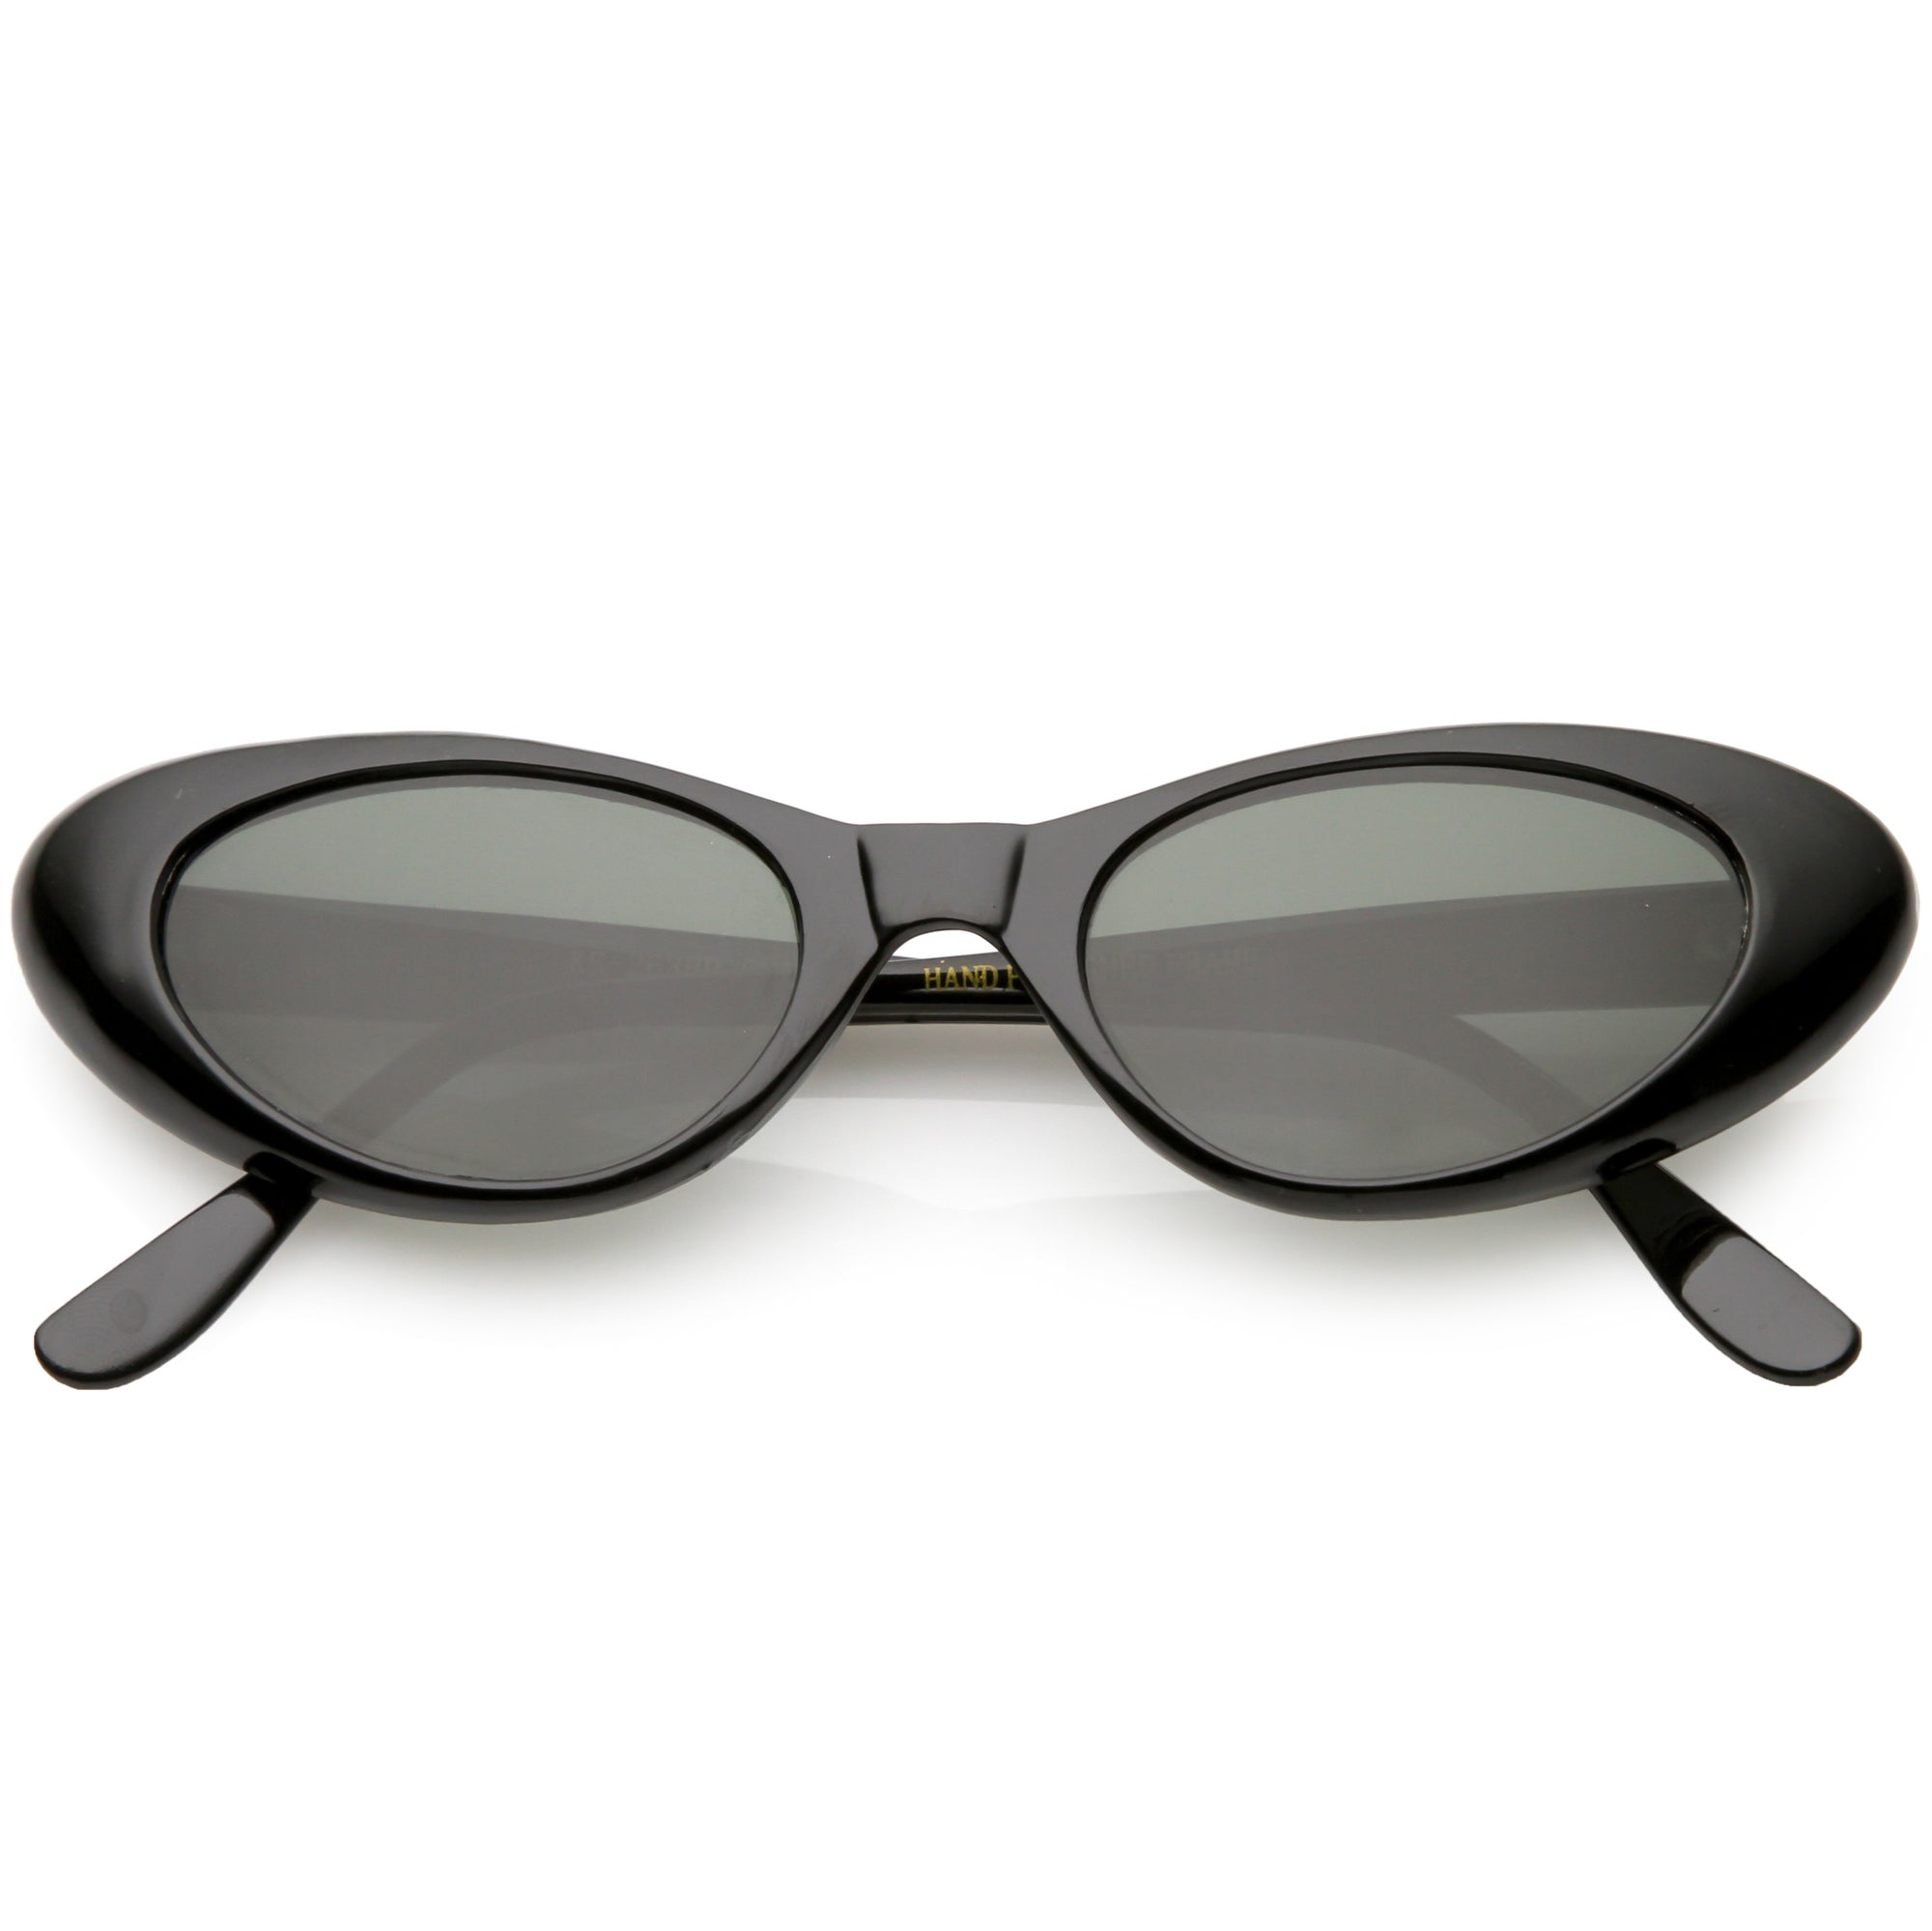 Gafas de sol estilo ojo de gato, estilo retro, pequeñas y vintage para mujer C661